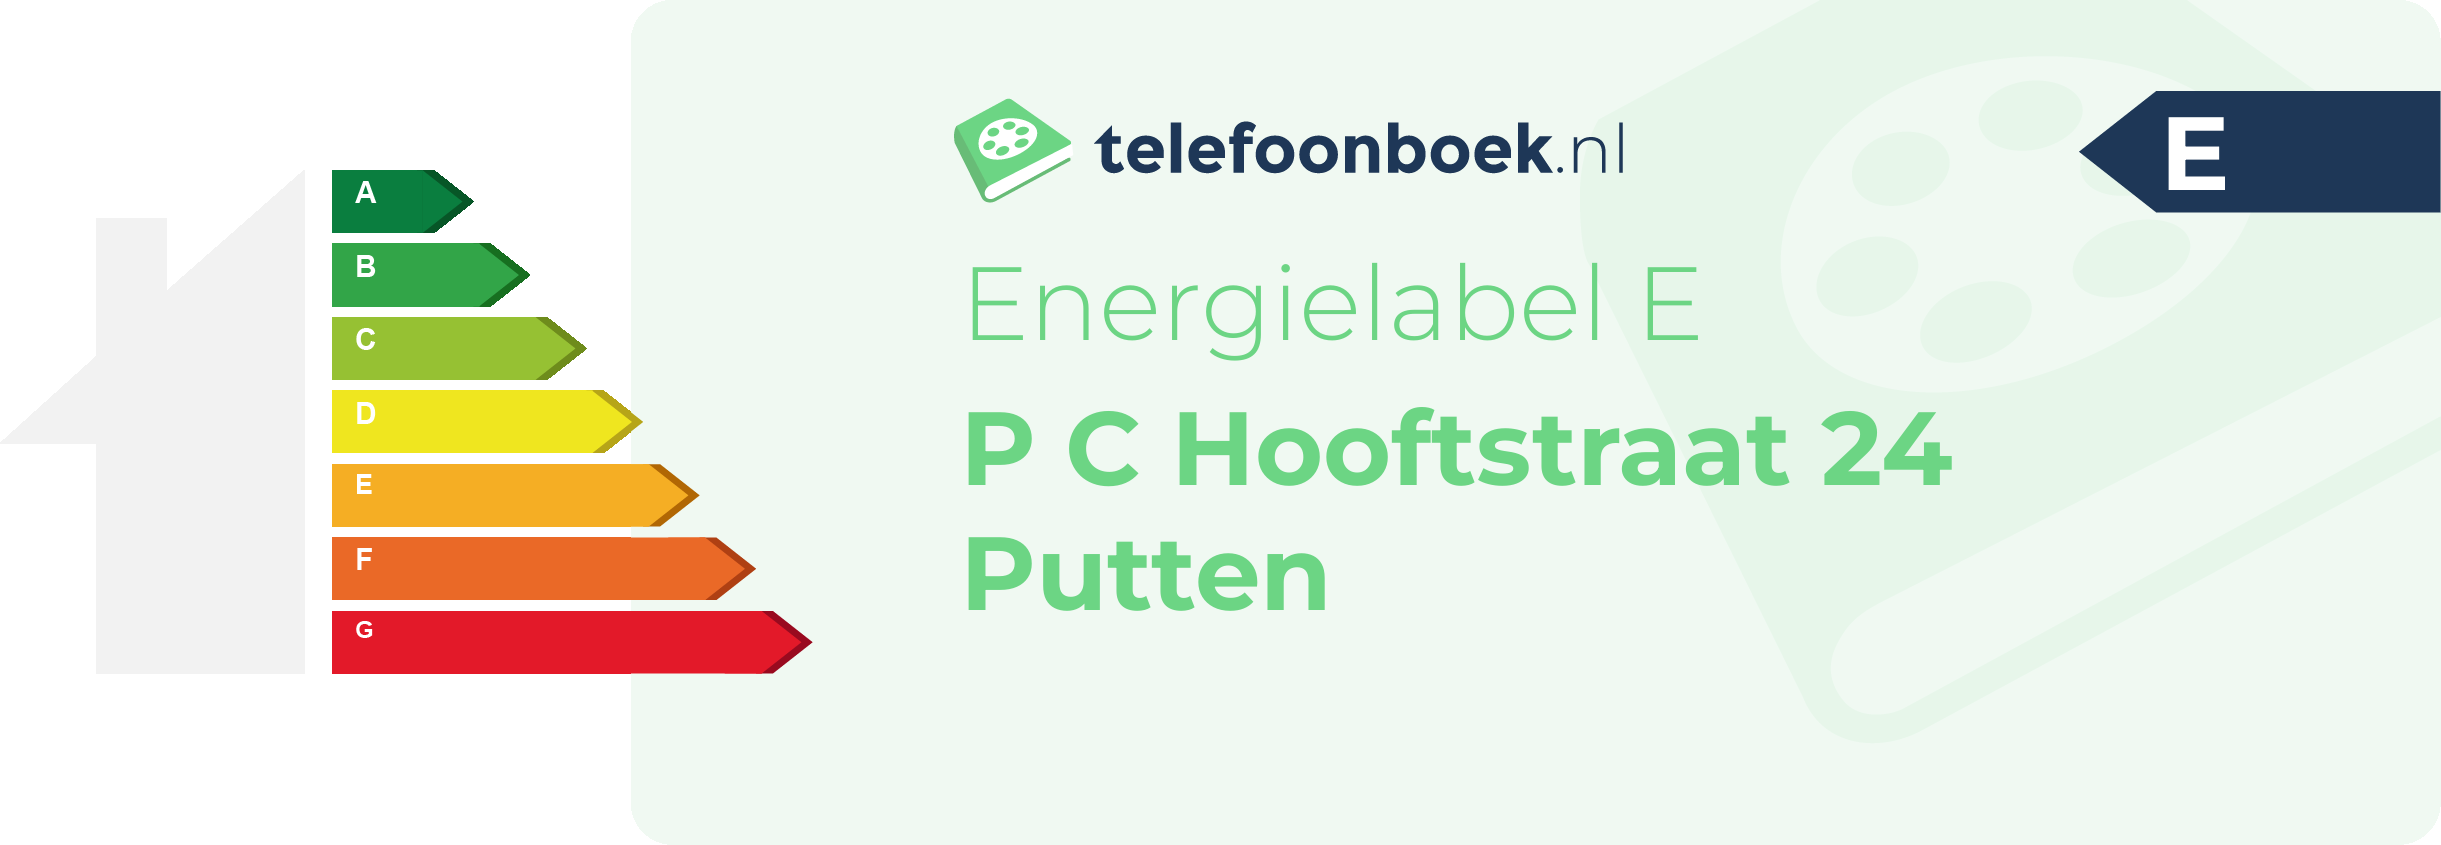 Energielabel P C Hooftstraat 24 Putten